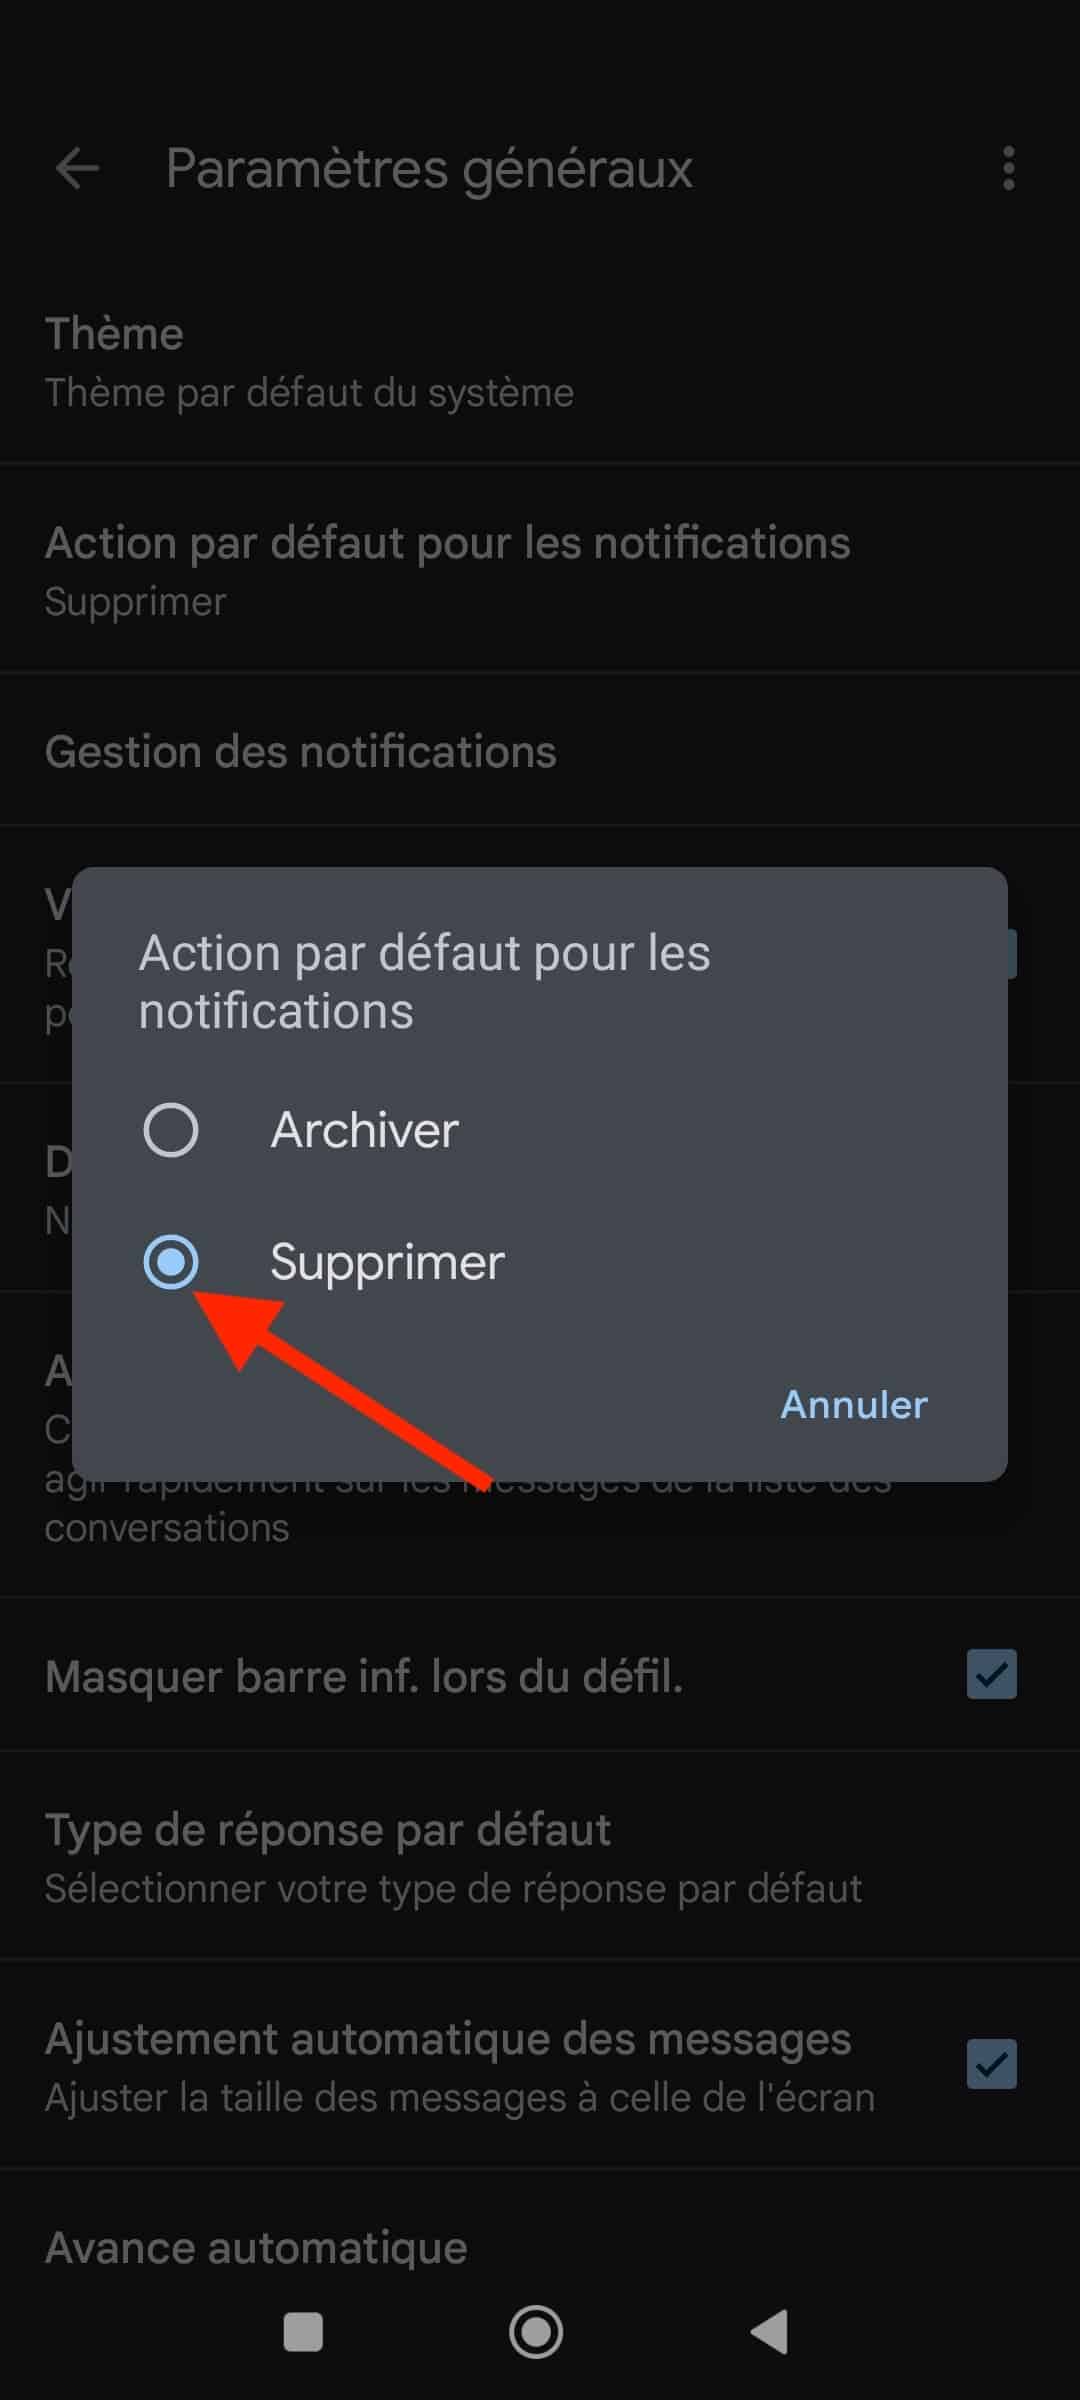 Paramètres généraux de Gmail : choisir Supprimer comme action par défaut des notifications